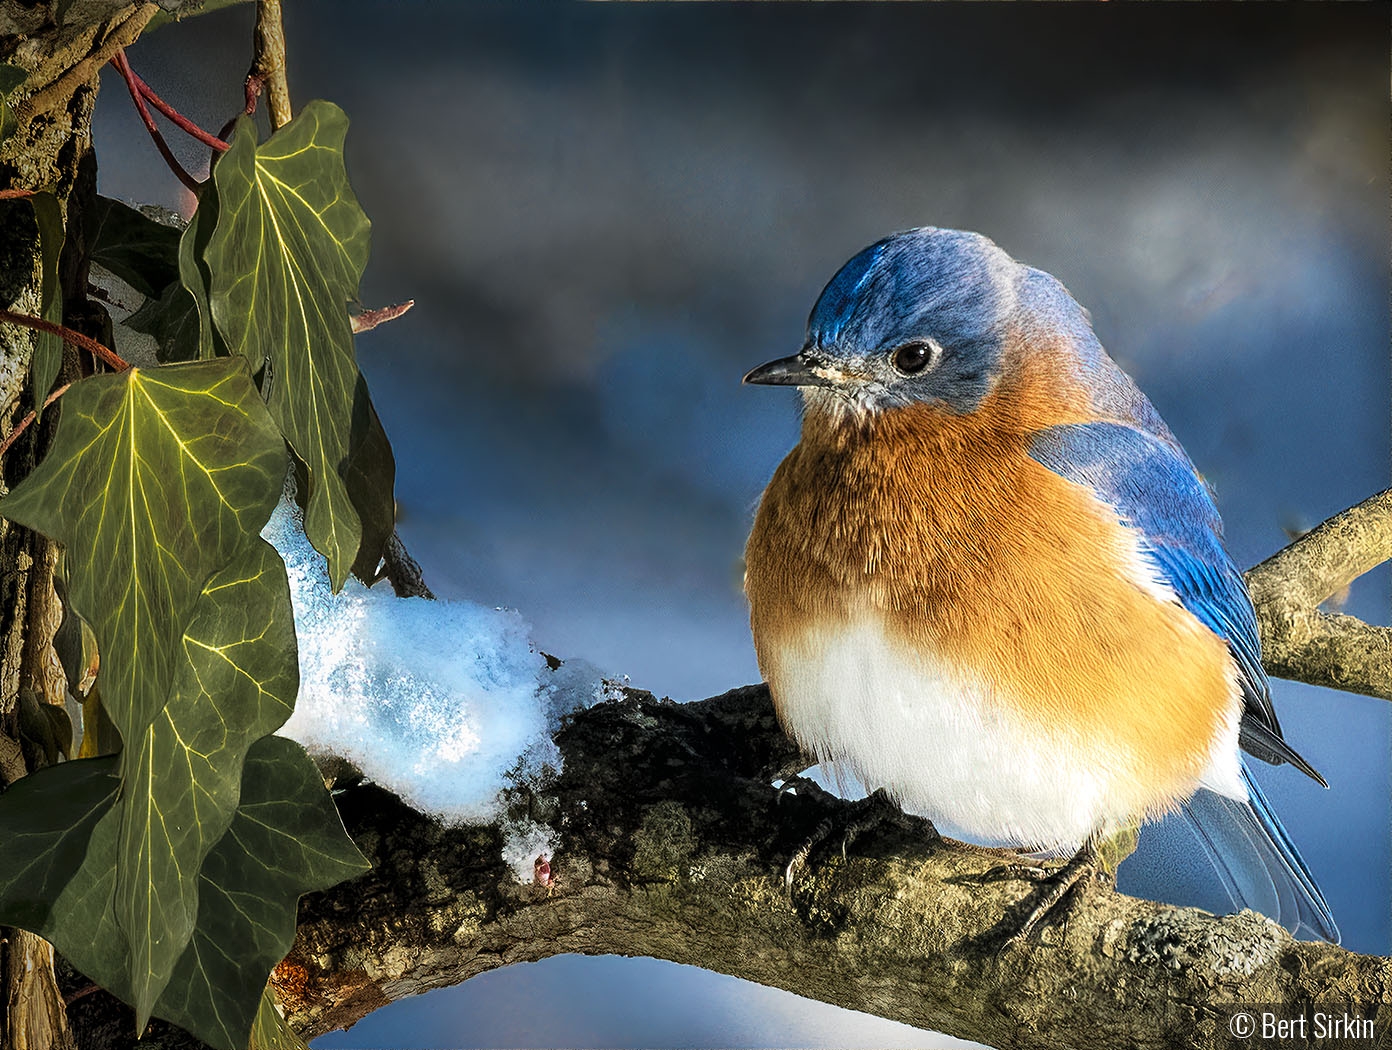 Bluebird with first snow by Bert Sirkin